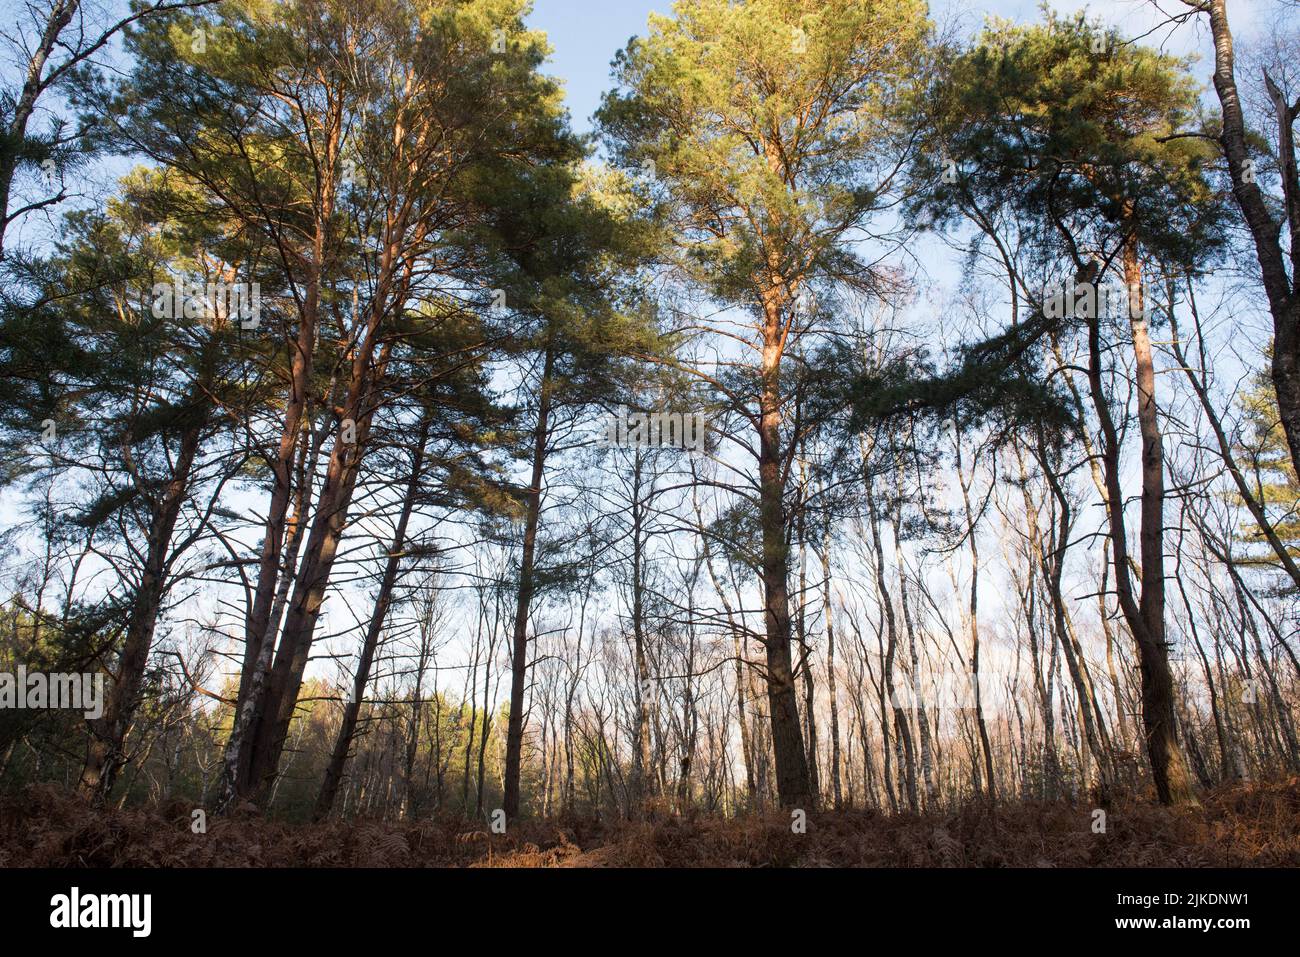 Bosque de pinos en la Selva de Rambouillet, Parque Natural Regional Haute Vallée de Chevreuse, departamento de Yvelines, región Isla de Francia, Francia, Foto de stock